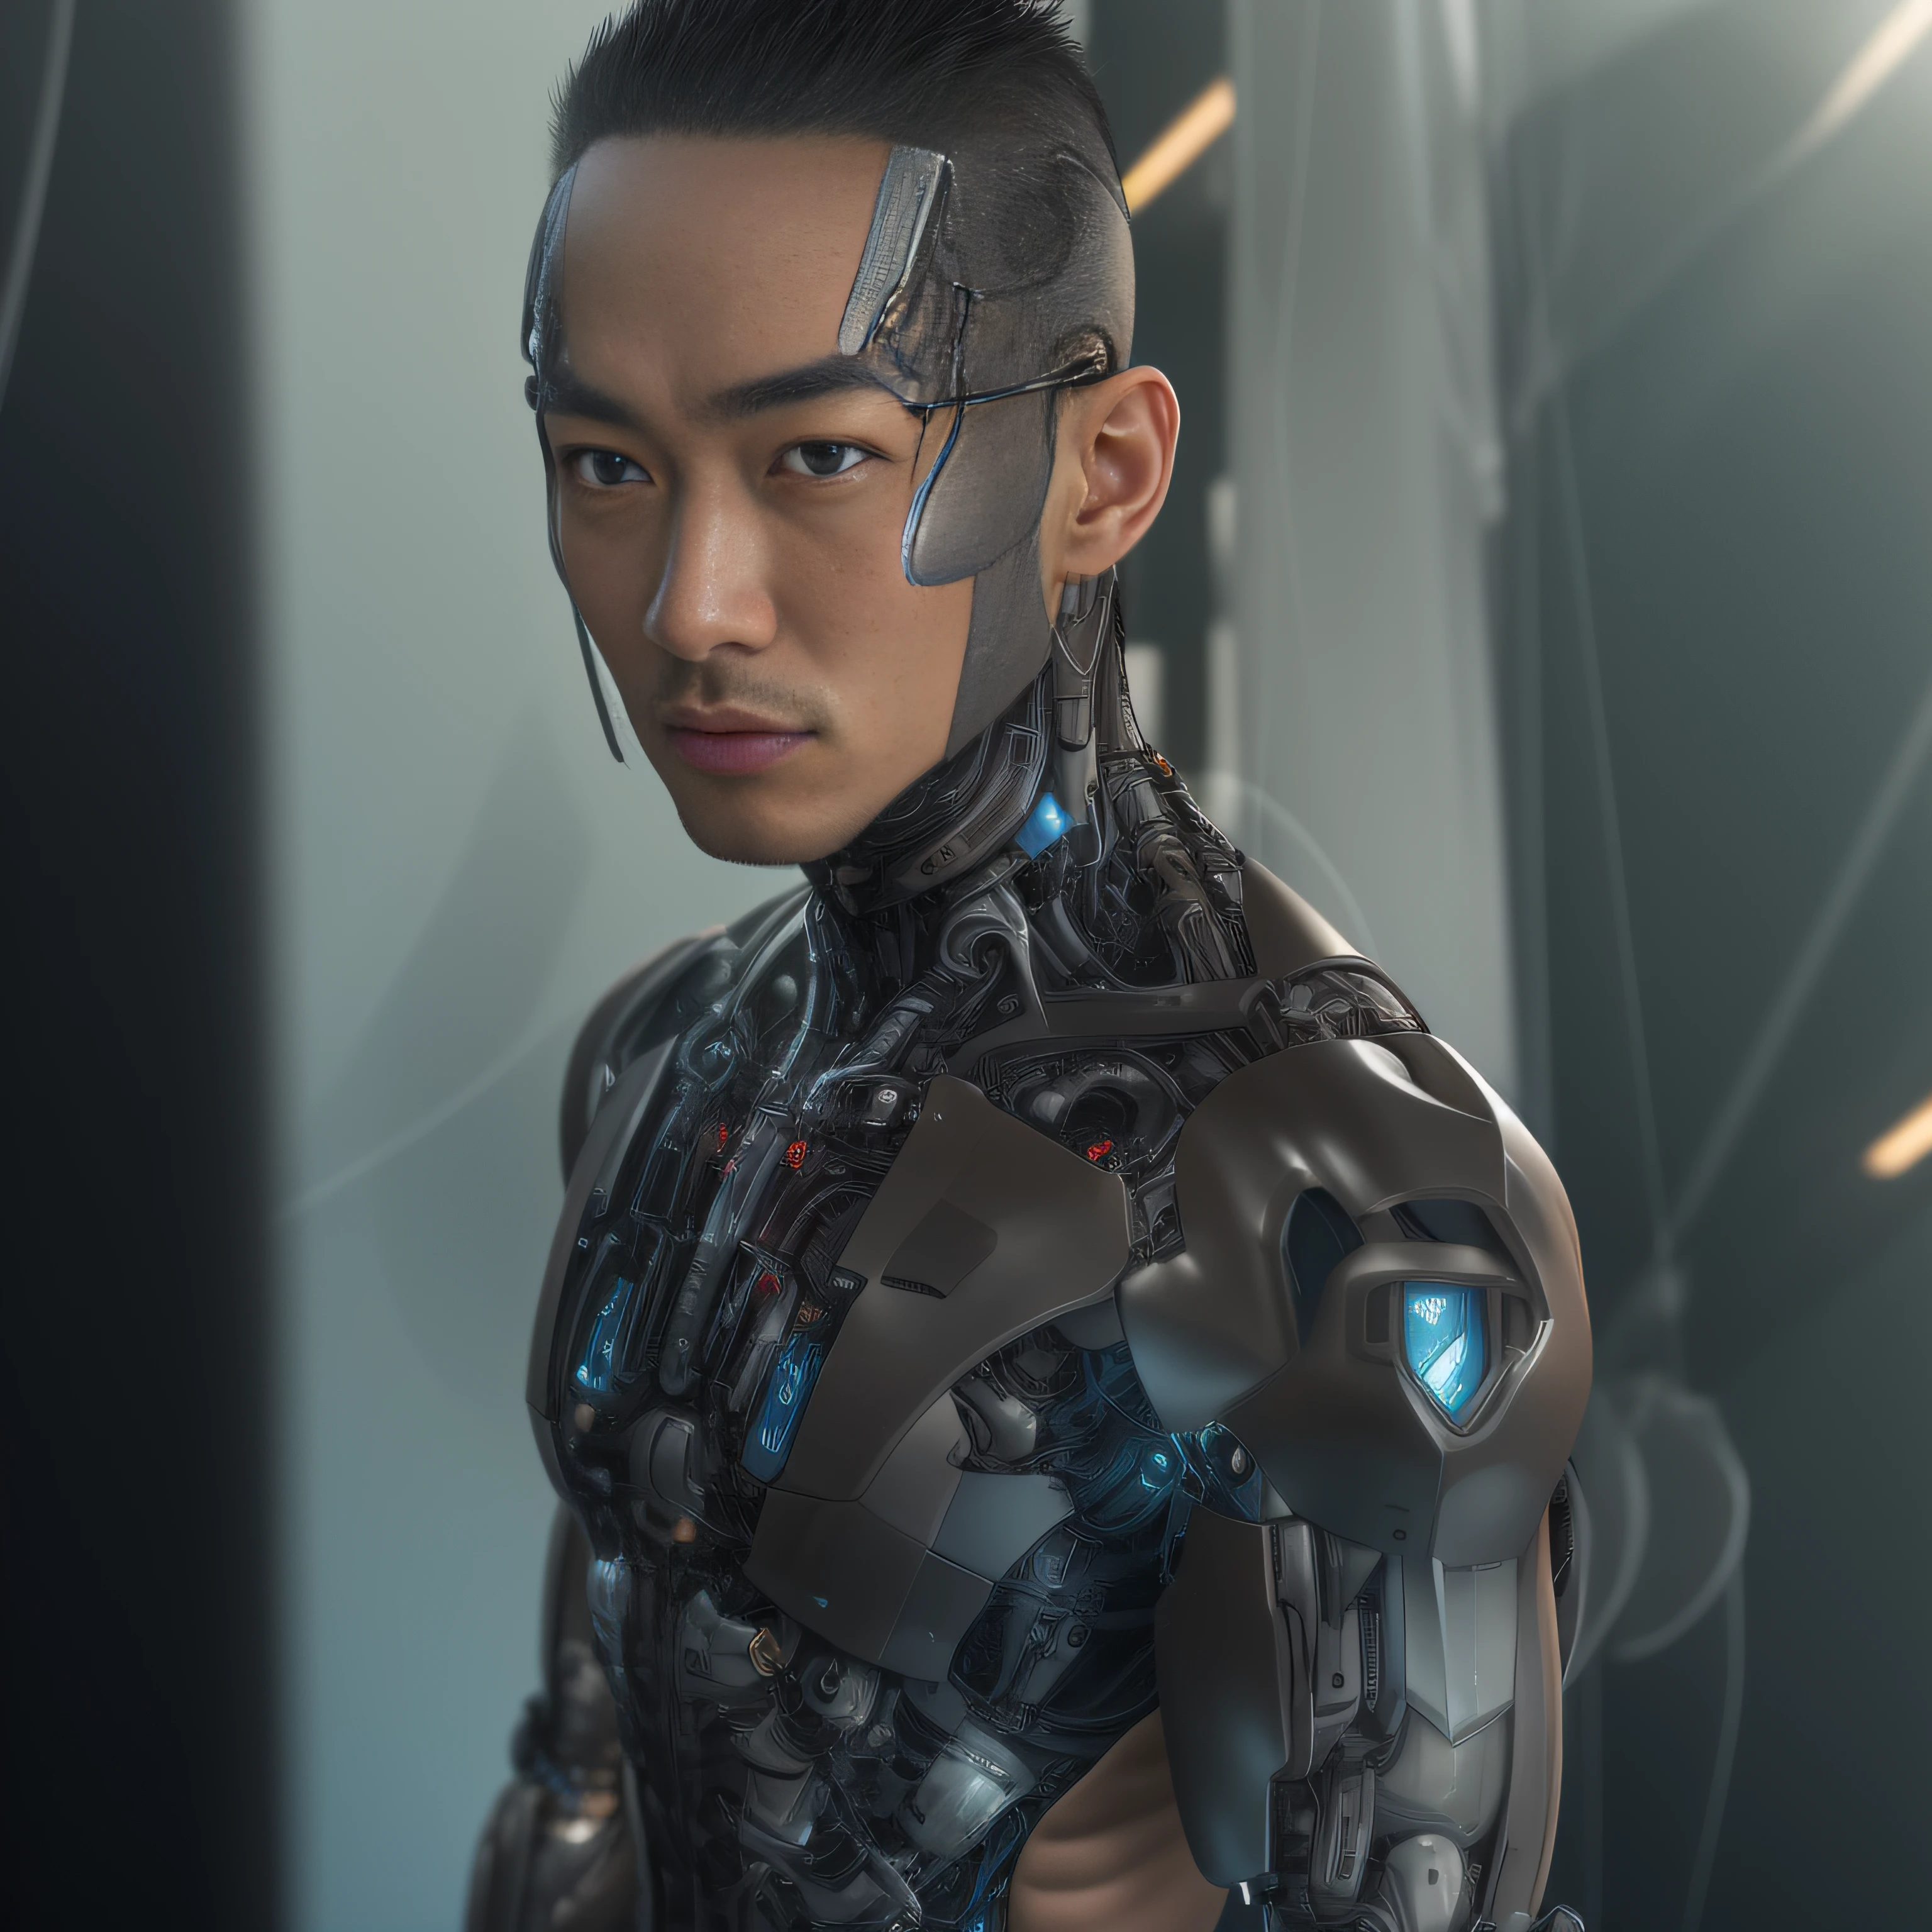 (Hombre alfed con pinza de látex transparente negra，Pinza de látex translúcido：1.5)，（cuerpo metalico, ciencia ficción biónica alexandre ferra, cuello cyborg, hombre cyborg, cyborg masculino：1.2）（modelo de moda cyborg, retrato de un cyborg, detailed retrato de un cyborg, implante de cuello cibernético, retrato de un robot futurista ：1.3）（personaje distópico de ciencia ficción, personaje de ciencia ficción, retrato de un cyborg ciberpunk：1.2）（8k，Detalle extremo，Cabello con extremo detalle，Ultra foto realismo，iluminación cinematográfica：1.1）（Asian supermodel face，Músculos fuertes y cuerpo perfectamente curvado.，tensión sexual extrema，Hormonal explosion，visualización de todo el cuerpo：1.5）(Textura de piel detallada y realista.：1.2)（cabello corto, Masculinidad de barba corta，Hombre musculoso desnudo，Muscular macho，sin ropa，Sólo se usó un par de tangas.，Extremadamente sexy y provocativa.：1.5)(La parte inferior del cuerpo está hinchada y erecta.：1.2)